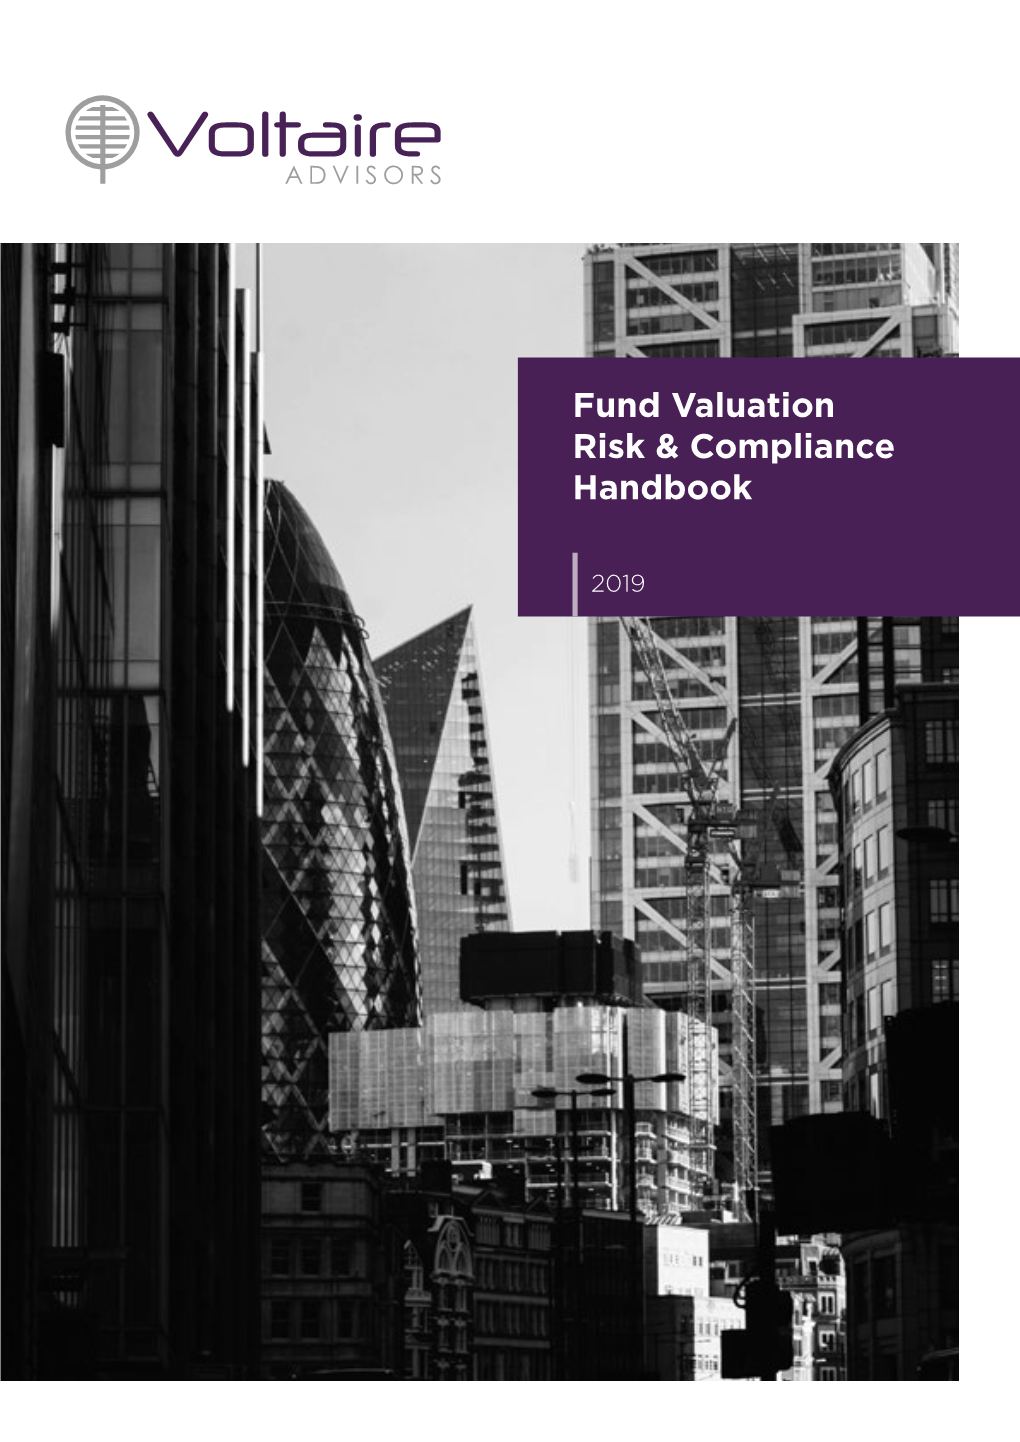 Fund Valuation Risk & Compliance Handbook